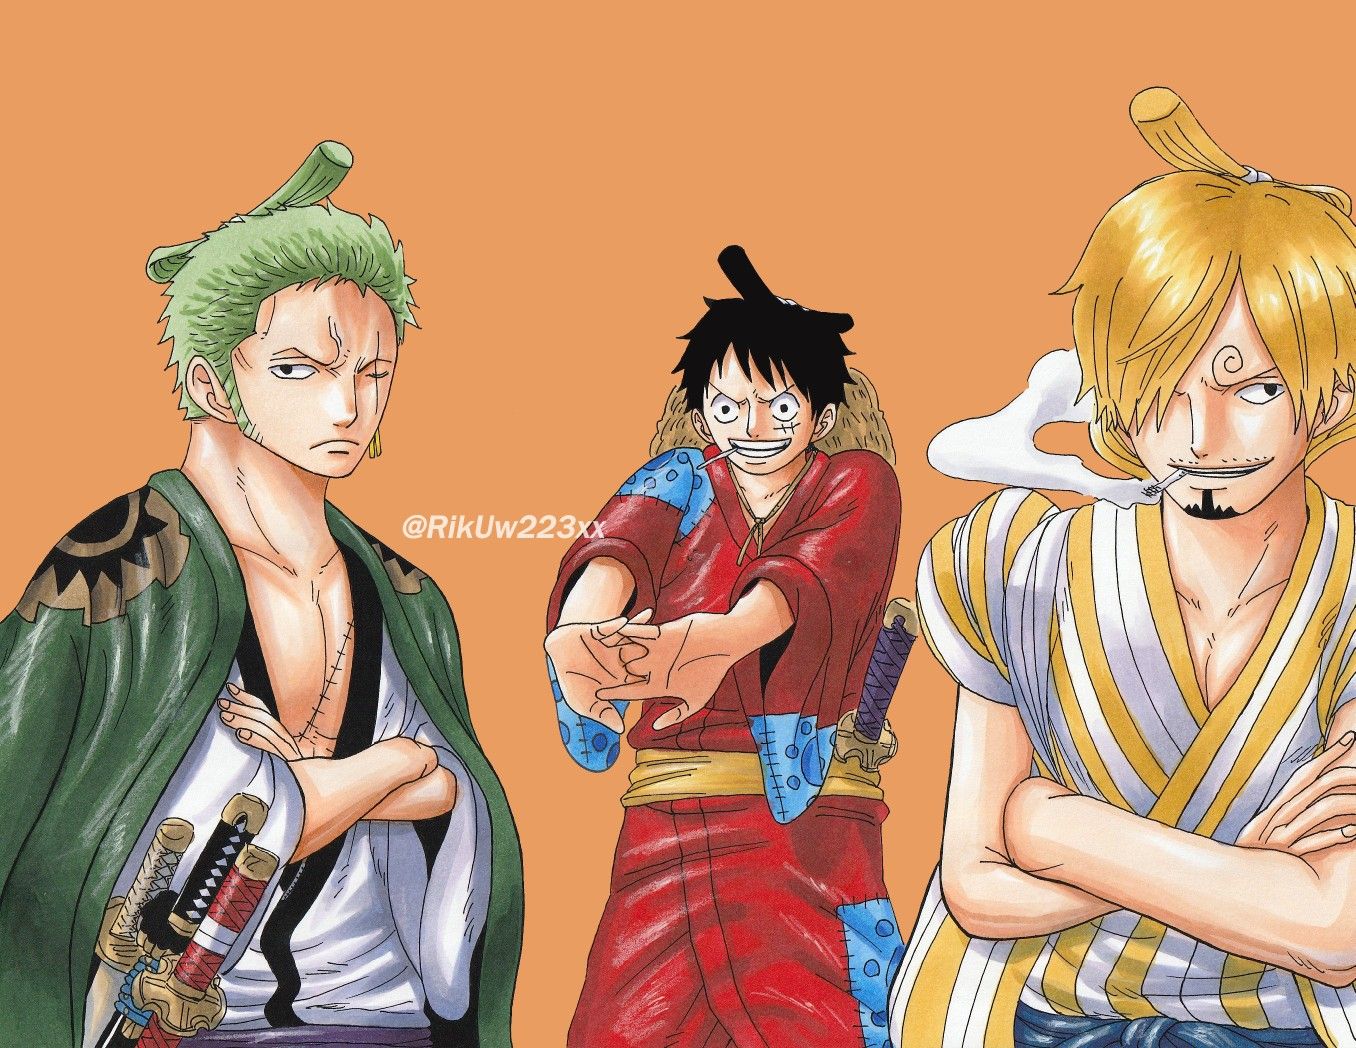 Cùng khám phá top 5 nhân vật yêu thích trong One Piece để biết thêm về những nhân vật đầy màu sắc và có đóng góp quan trọng cho cốt truyện. Hãy chia sẻ và so sánh ý kiến của mình với những fan khác và tìm ra nhân vật nào là phù hợp nhất với sở thích của bạn.